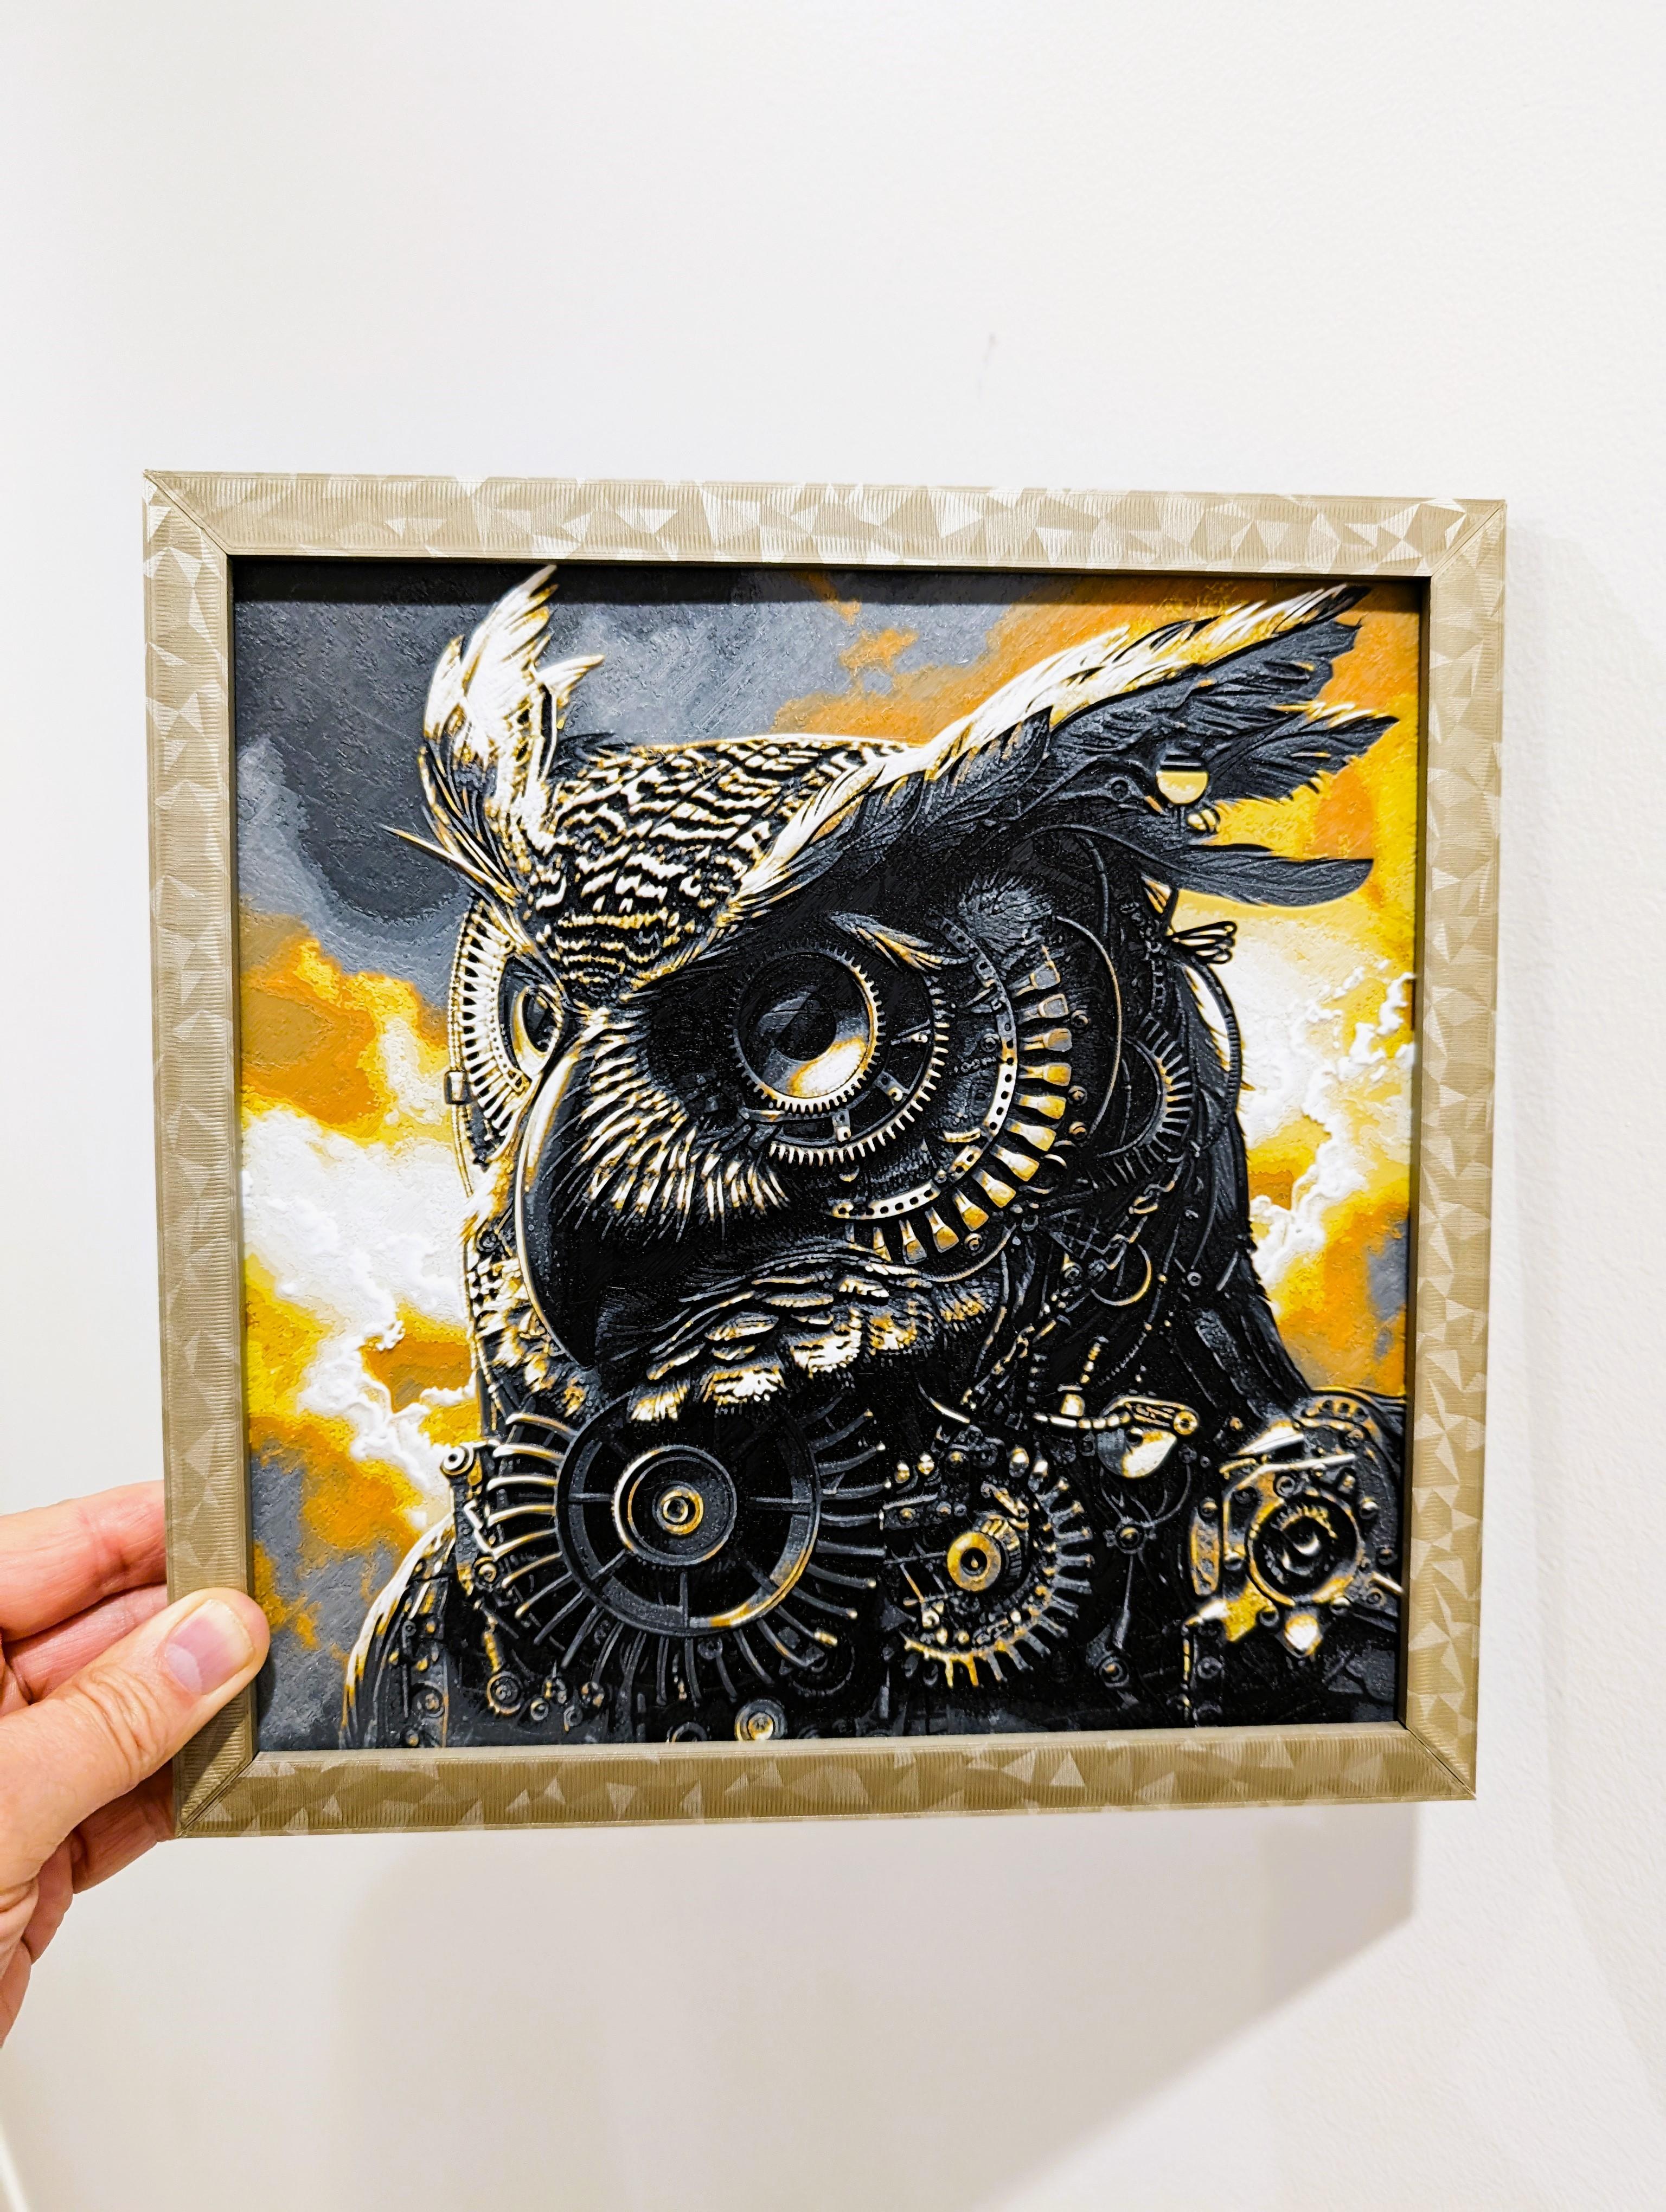 Diesel Punk Owl - Hueforge Print 3d model